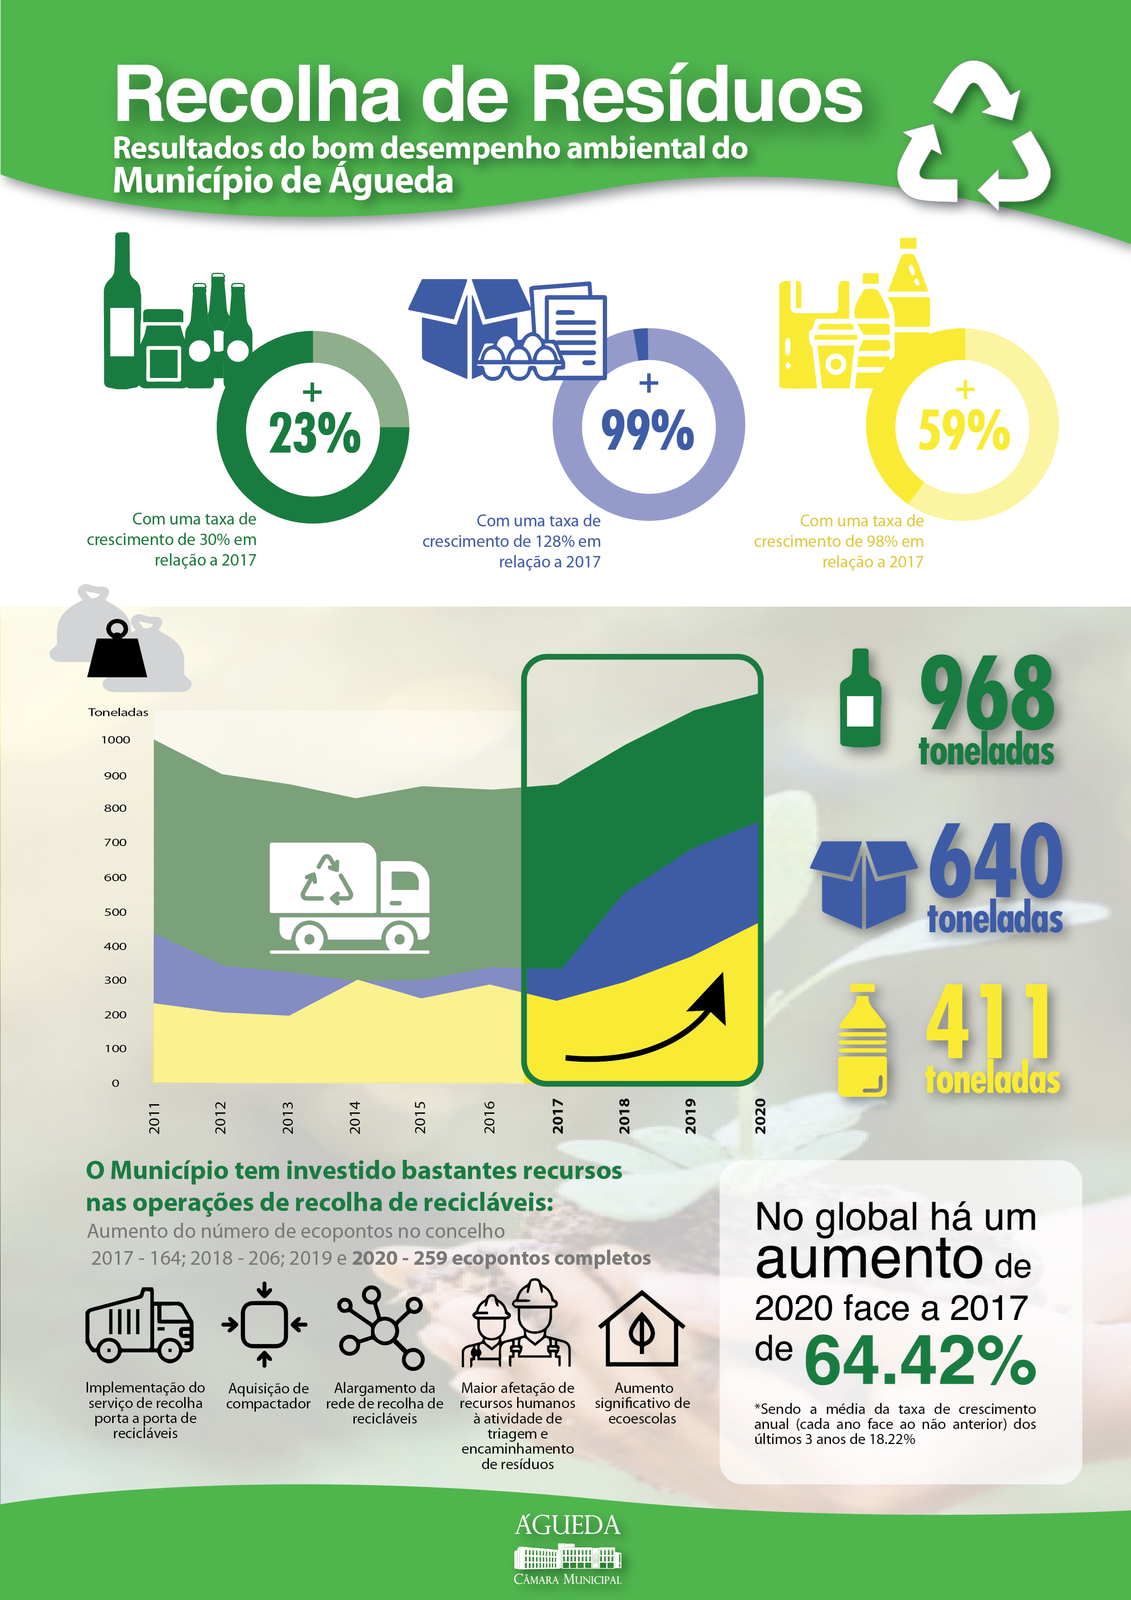 Reciclagem aumenta 64,42% em Águeda